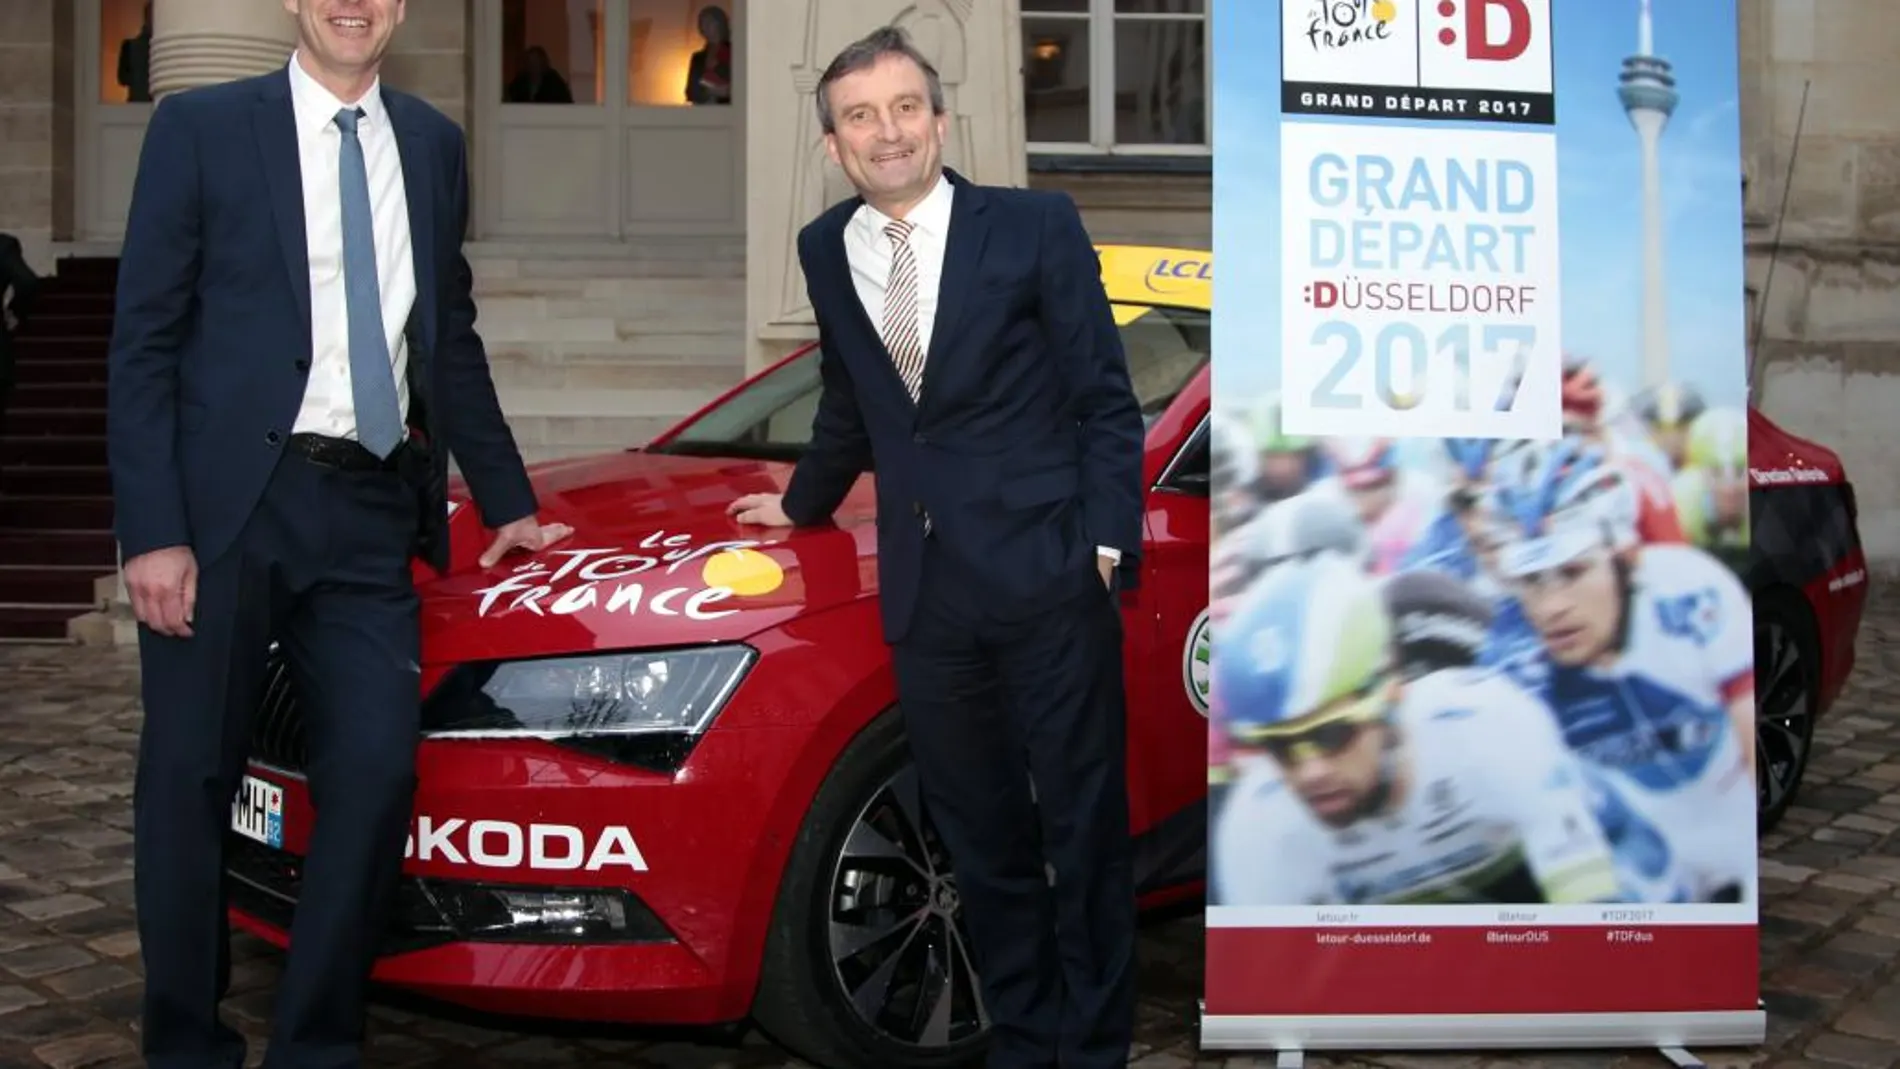 el director general del Tour de Francia, Christian Prudhomme; el alcalde de Düsseldorf, Thomas Geisel, durante la presentación del la Grand Depart del Tour de Francia 2017 en París